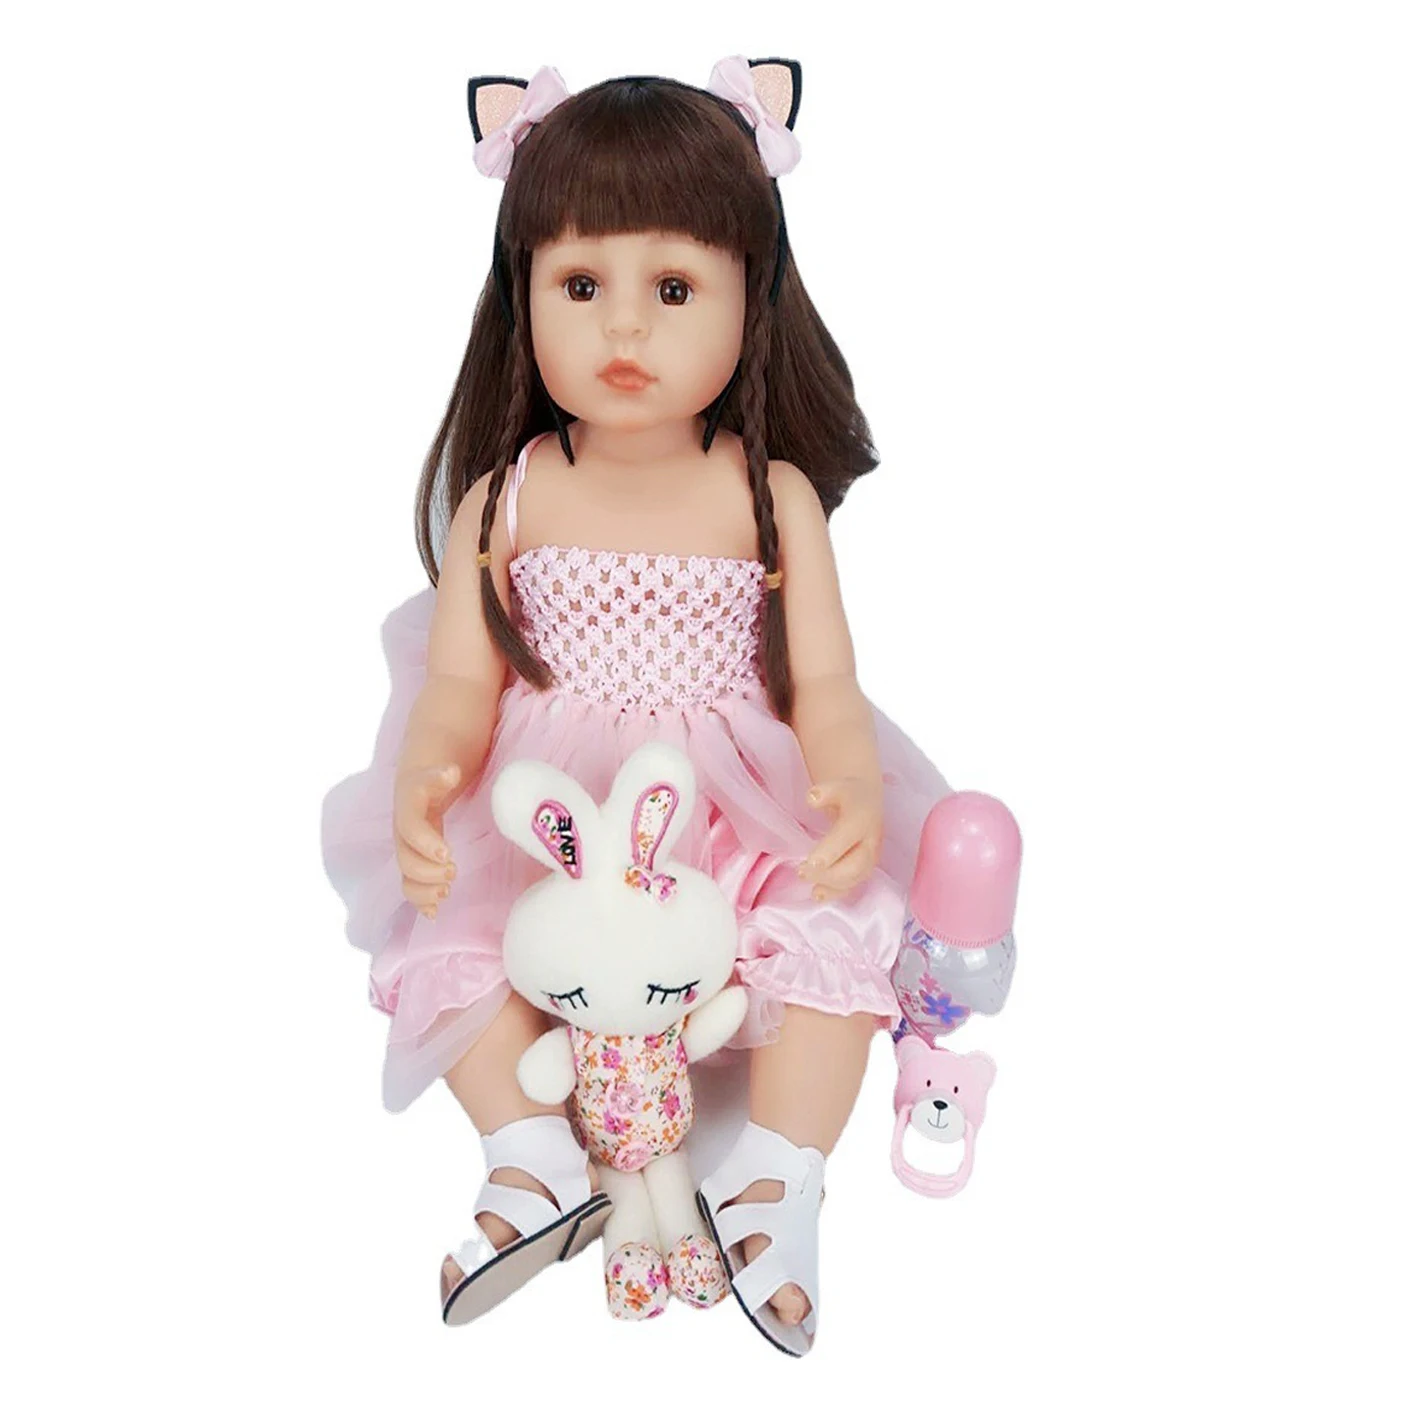 

Реалистичная полностью силиконовая кукла реборн 55 см, 22-дюймовая Реалистичная мягкая игрушка ручной работы с телом Реборн, маленькая девоч...